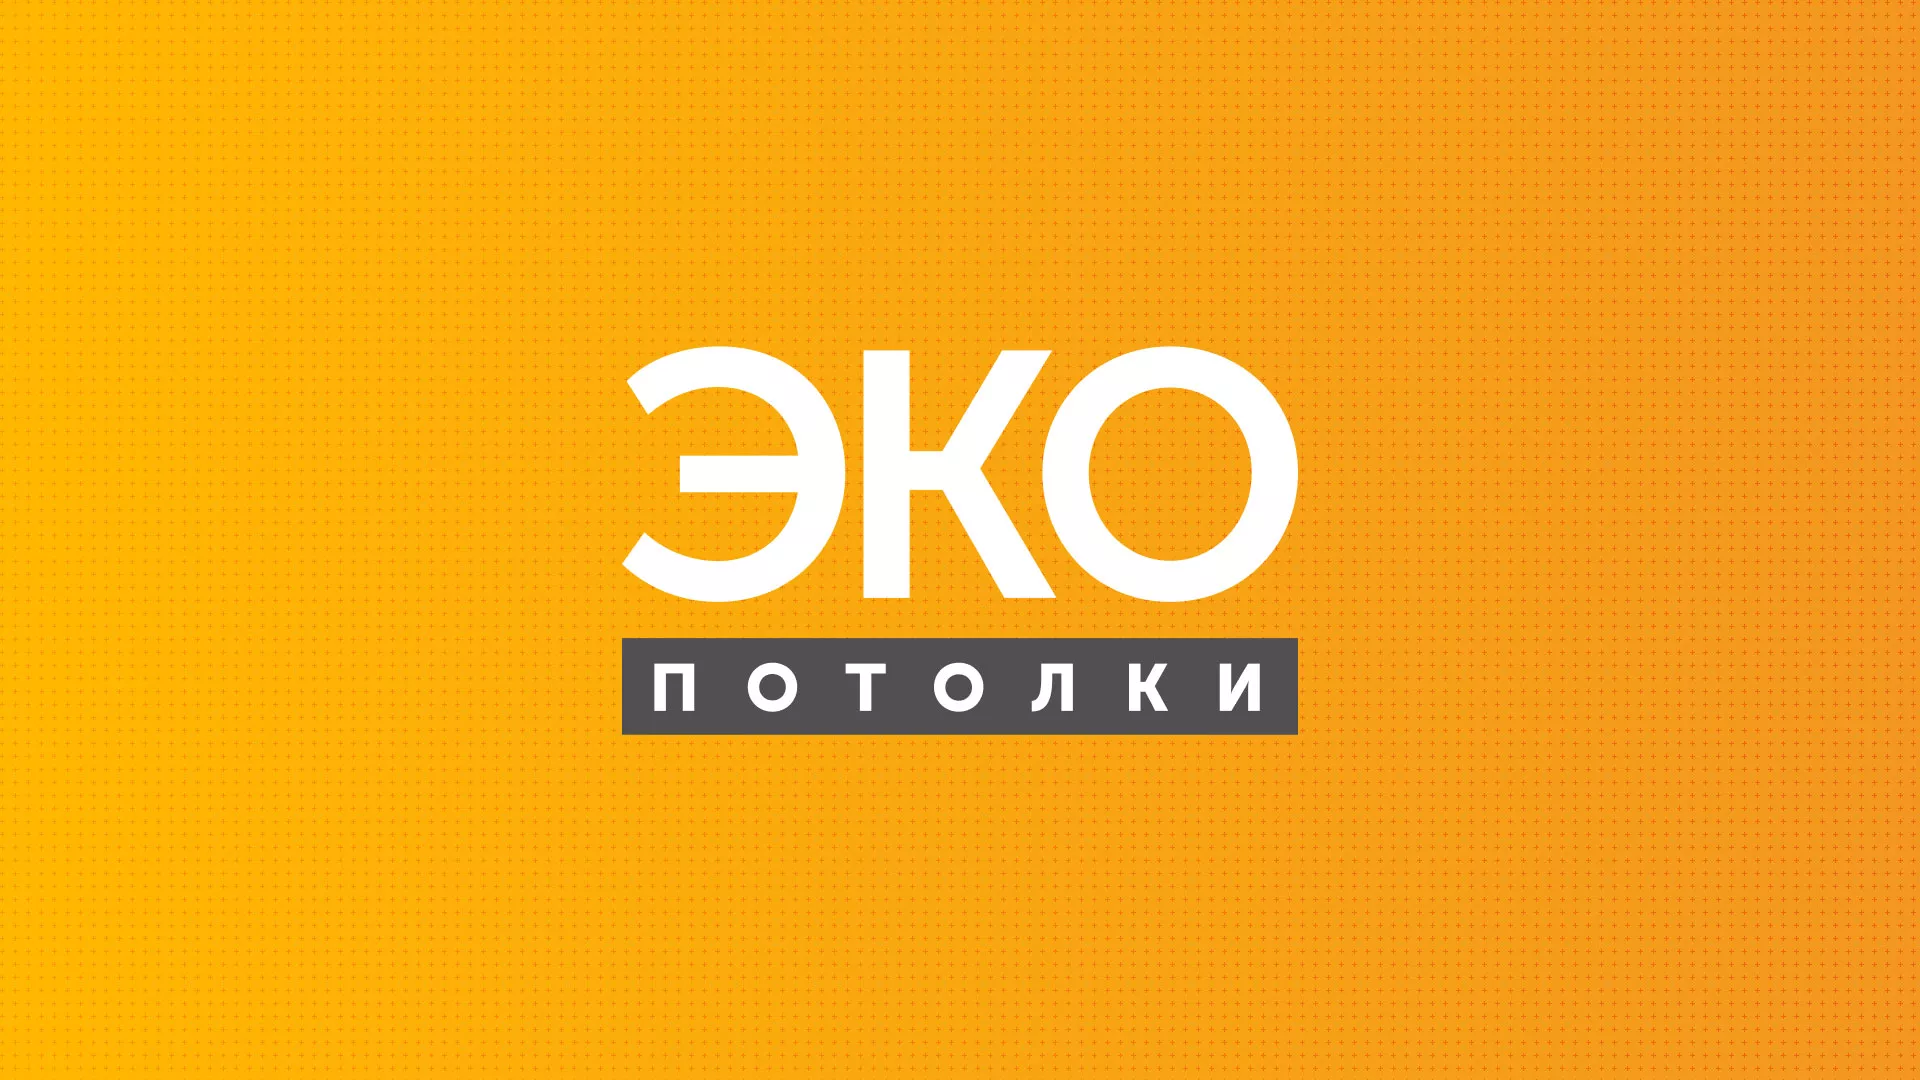 Разработка сайта по натяжным потолкам «Эко Потолки» в Петровске-Забайкальском